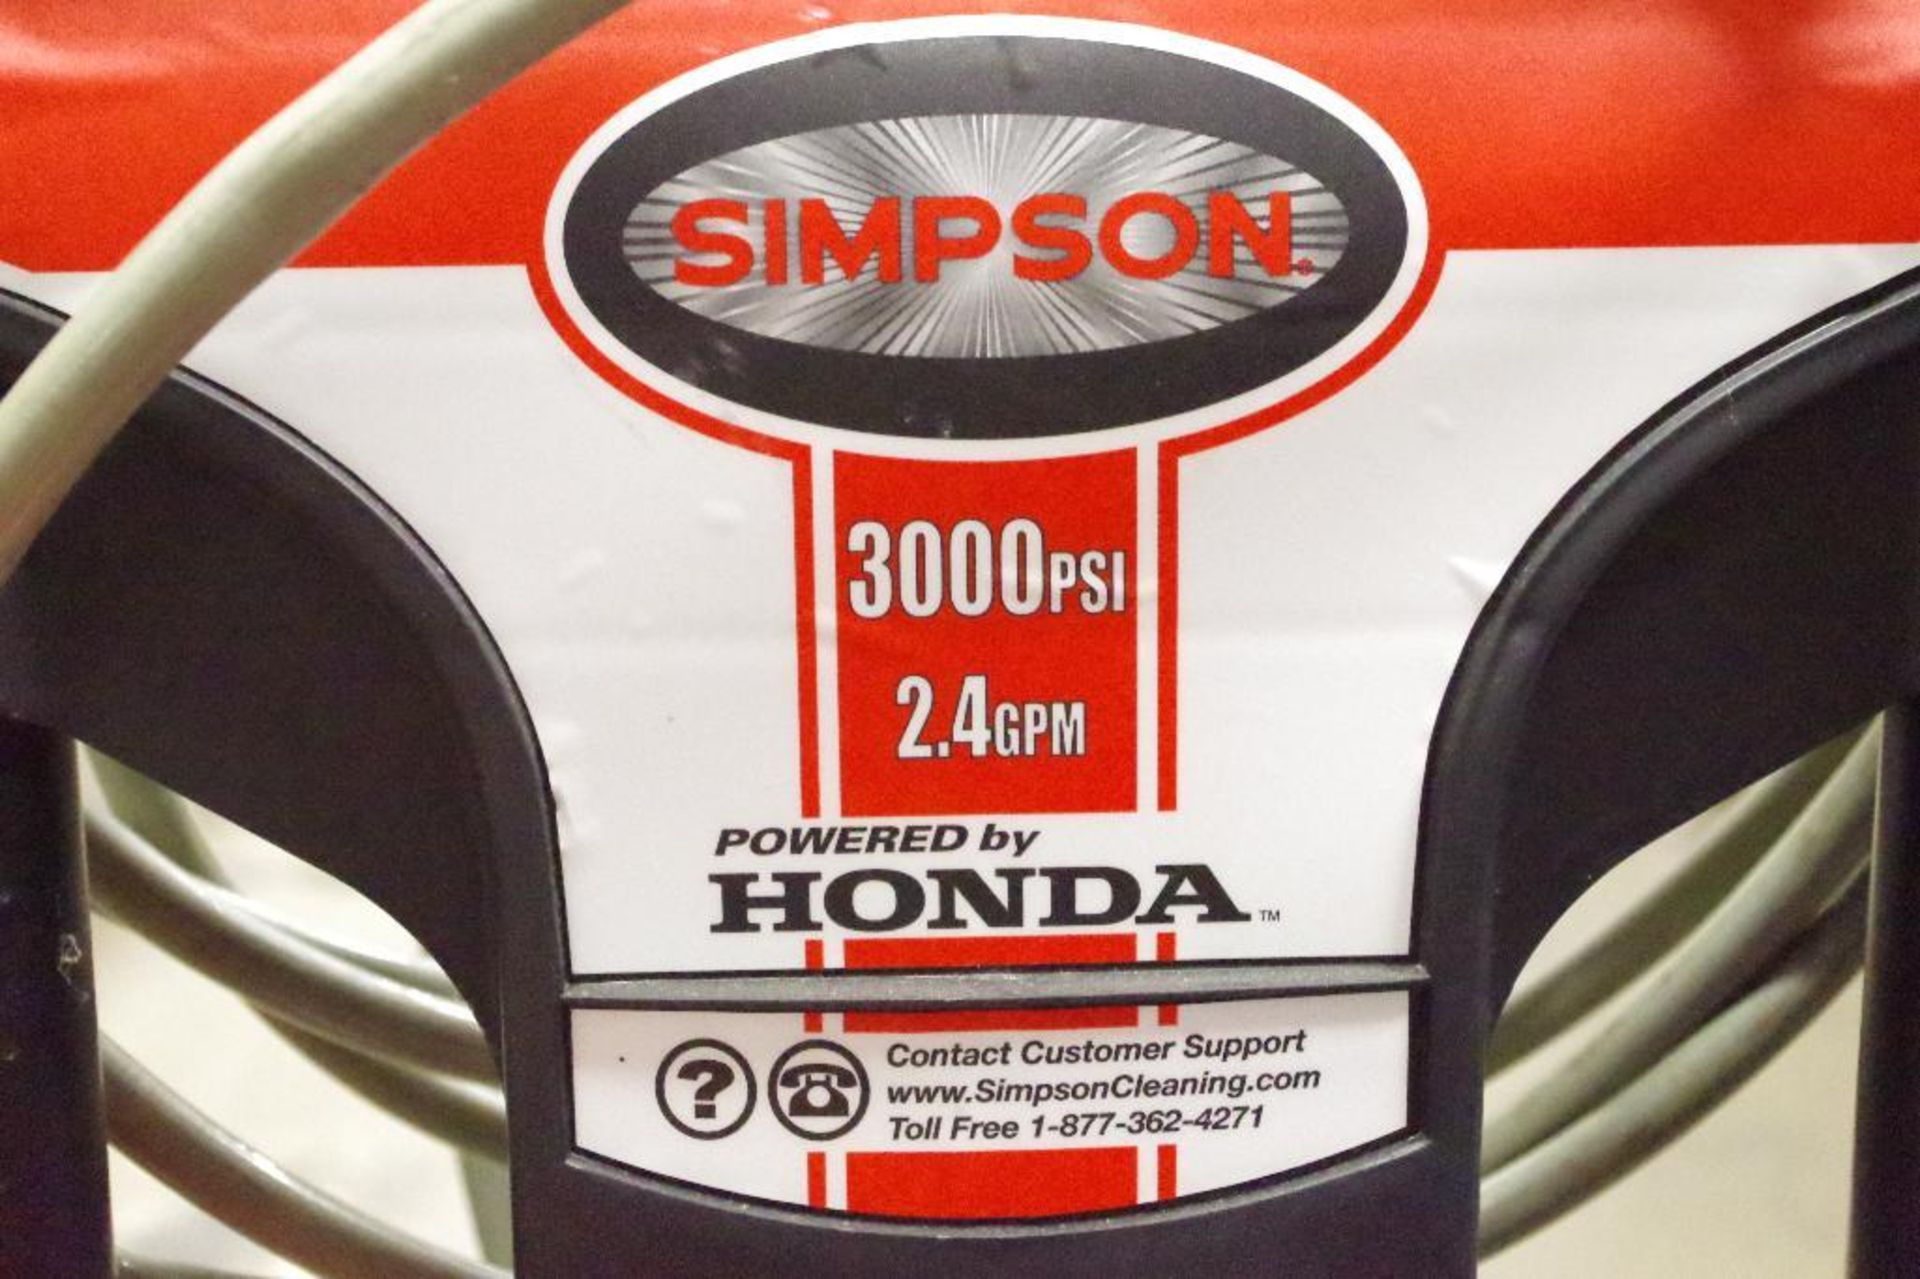 SIMPSON 2.4 GPM, 3000 PSI Gas Pressure Washer w/ HONDA Engine - Bild 2 aus 3